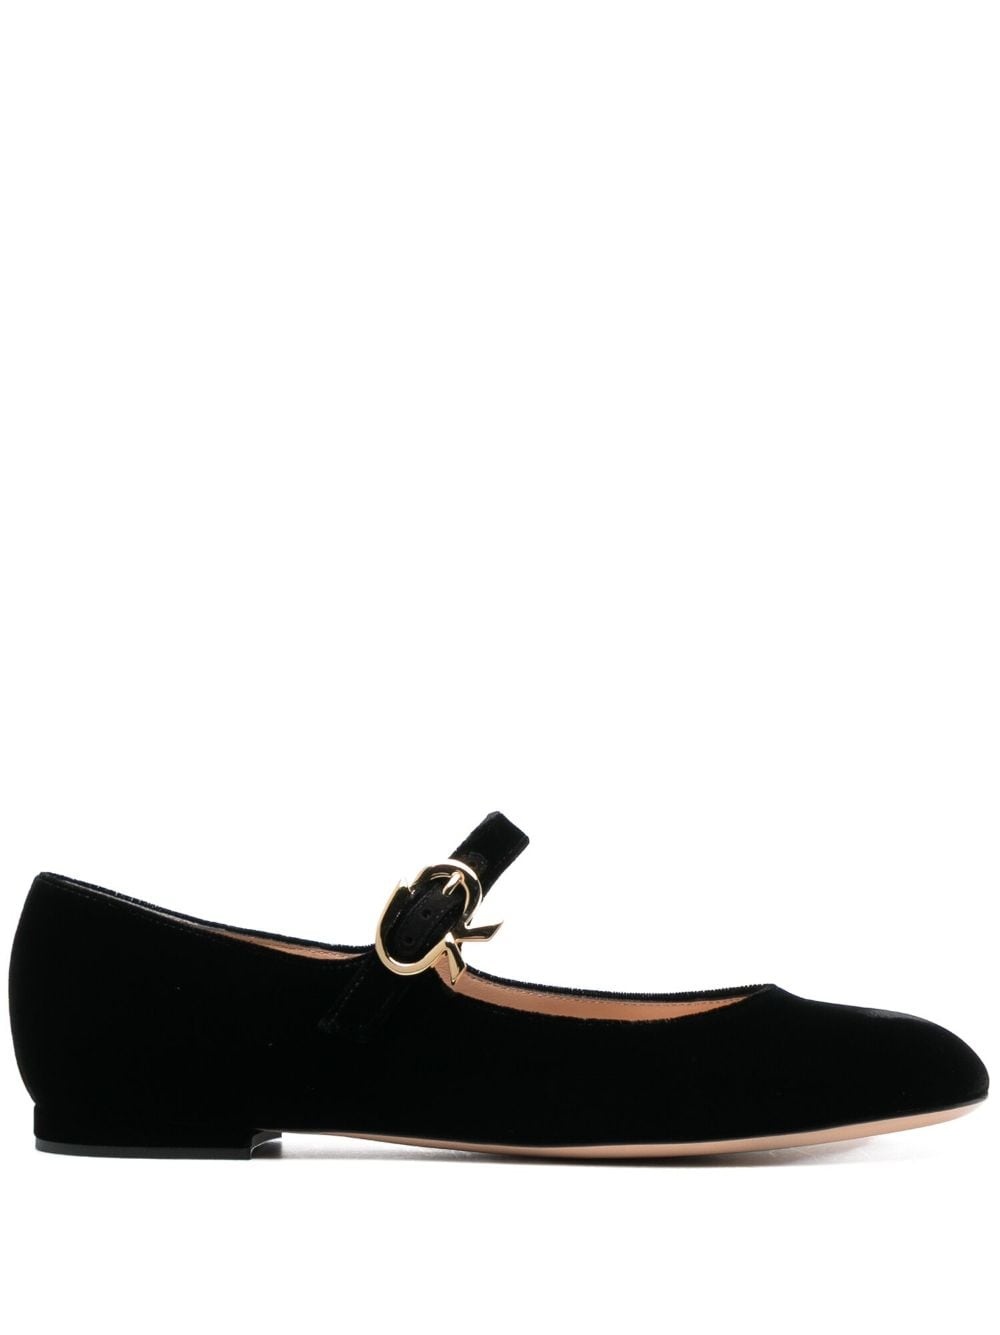 Mary velvet leather ballerina shoes - 1